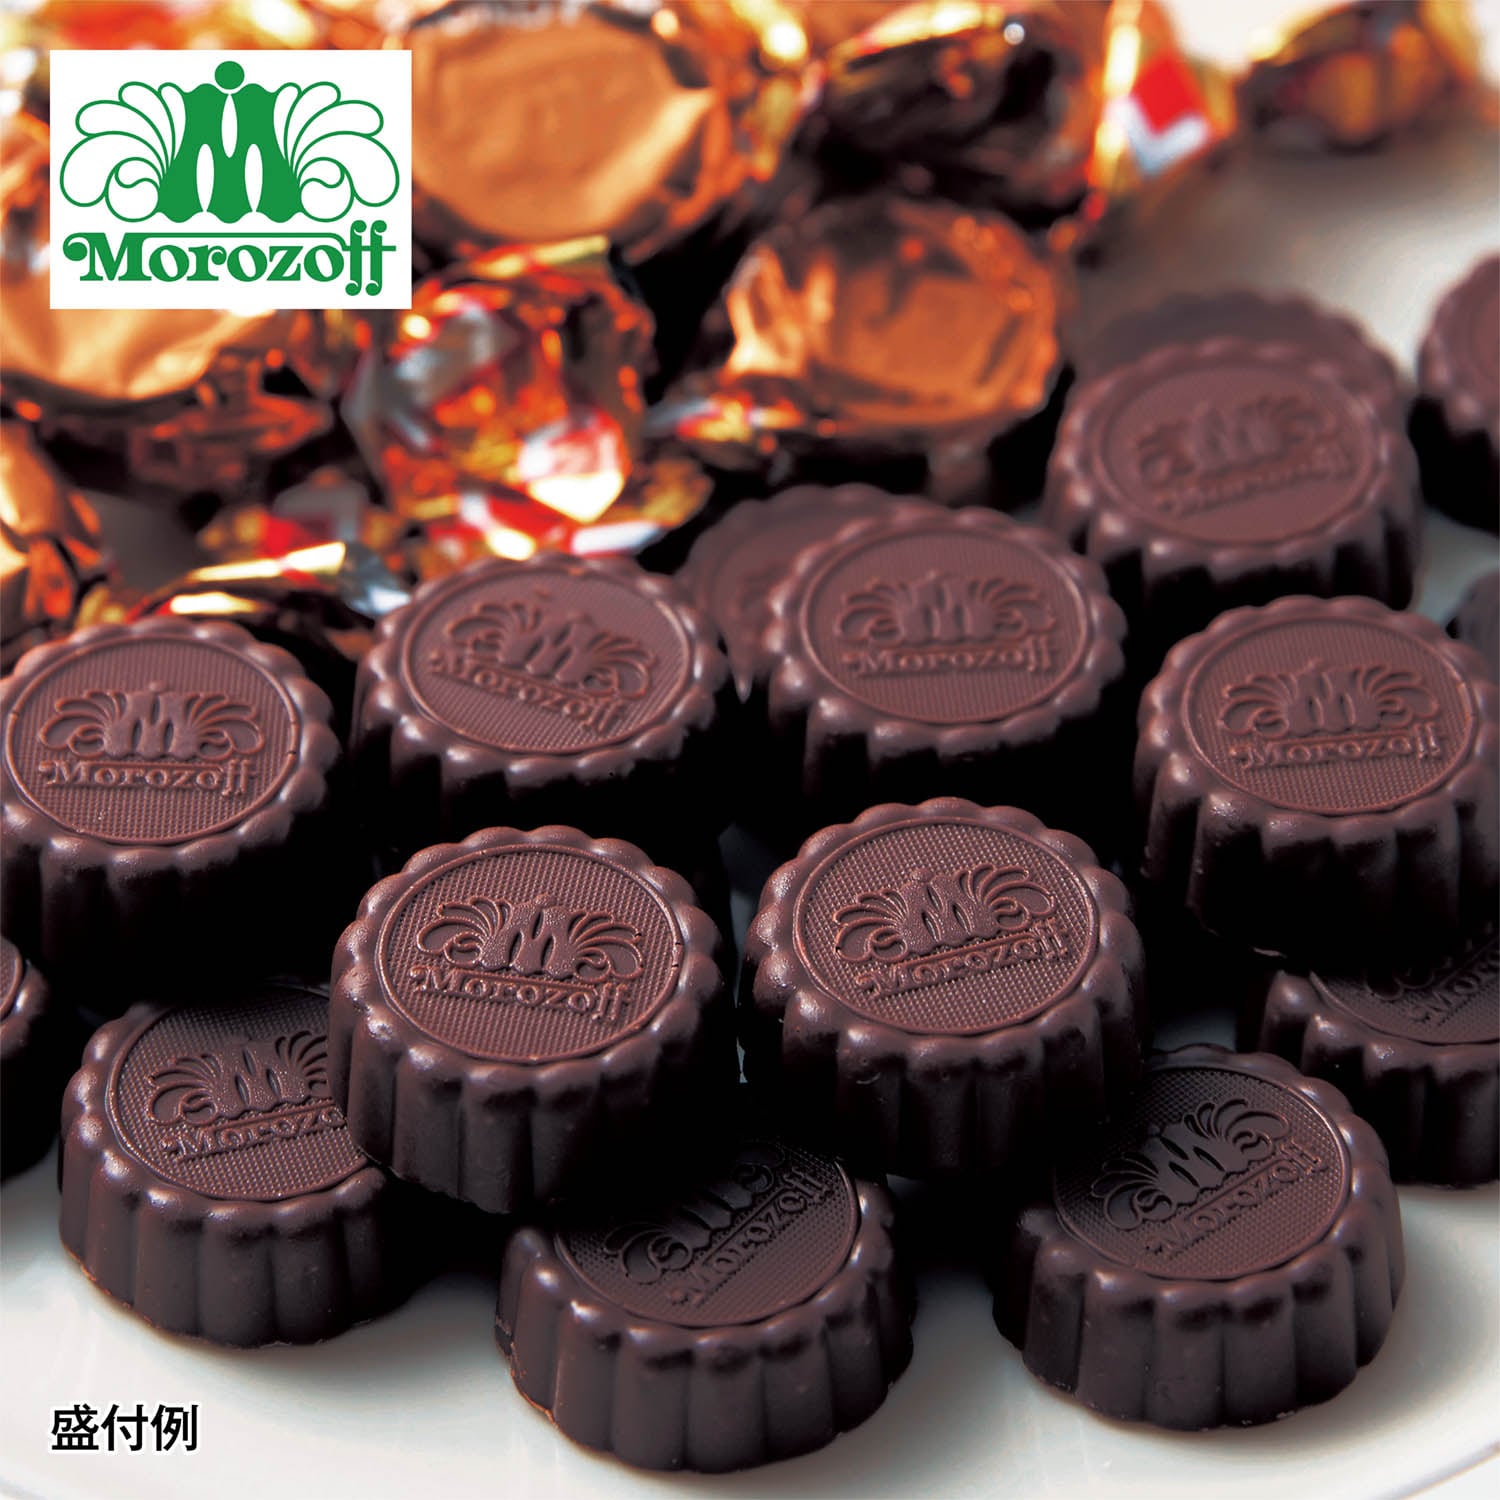 【モロゾフ】【予約商品】 ラウンドプレーン(ミルクチョコレート) 1kg画像